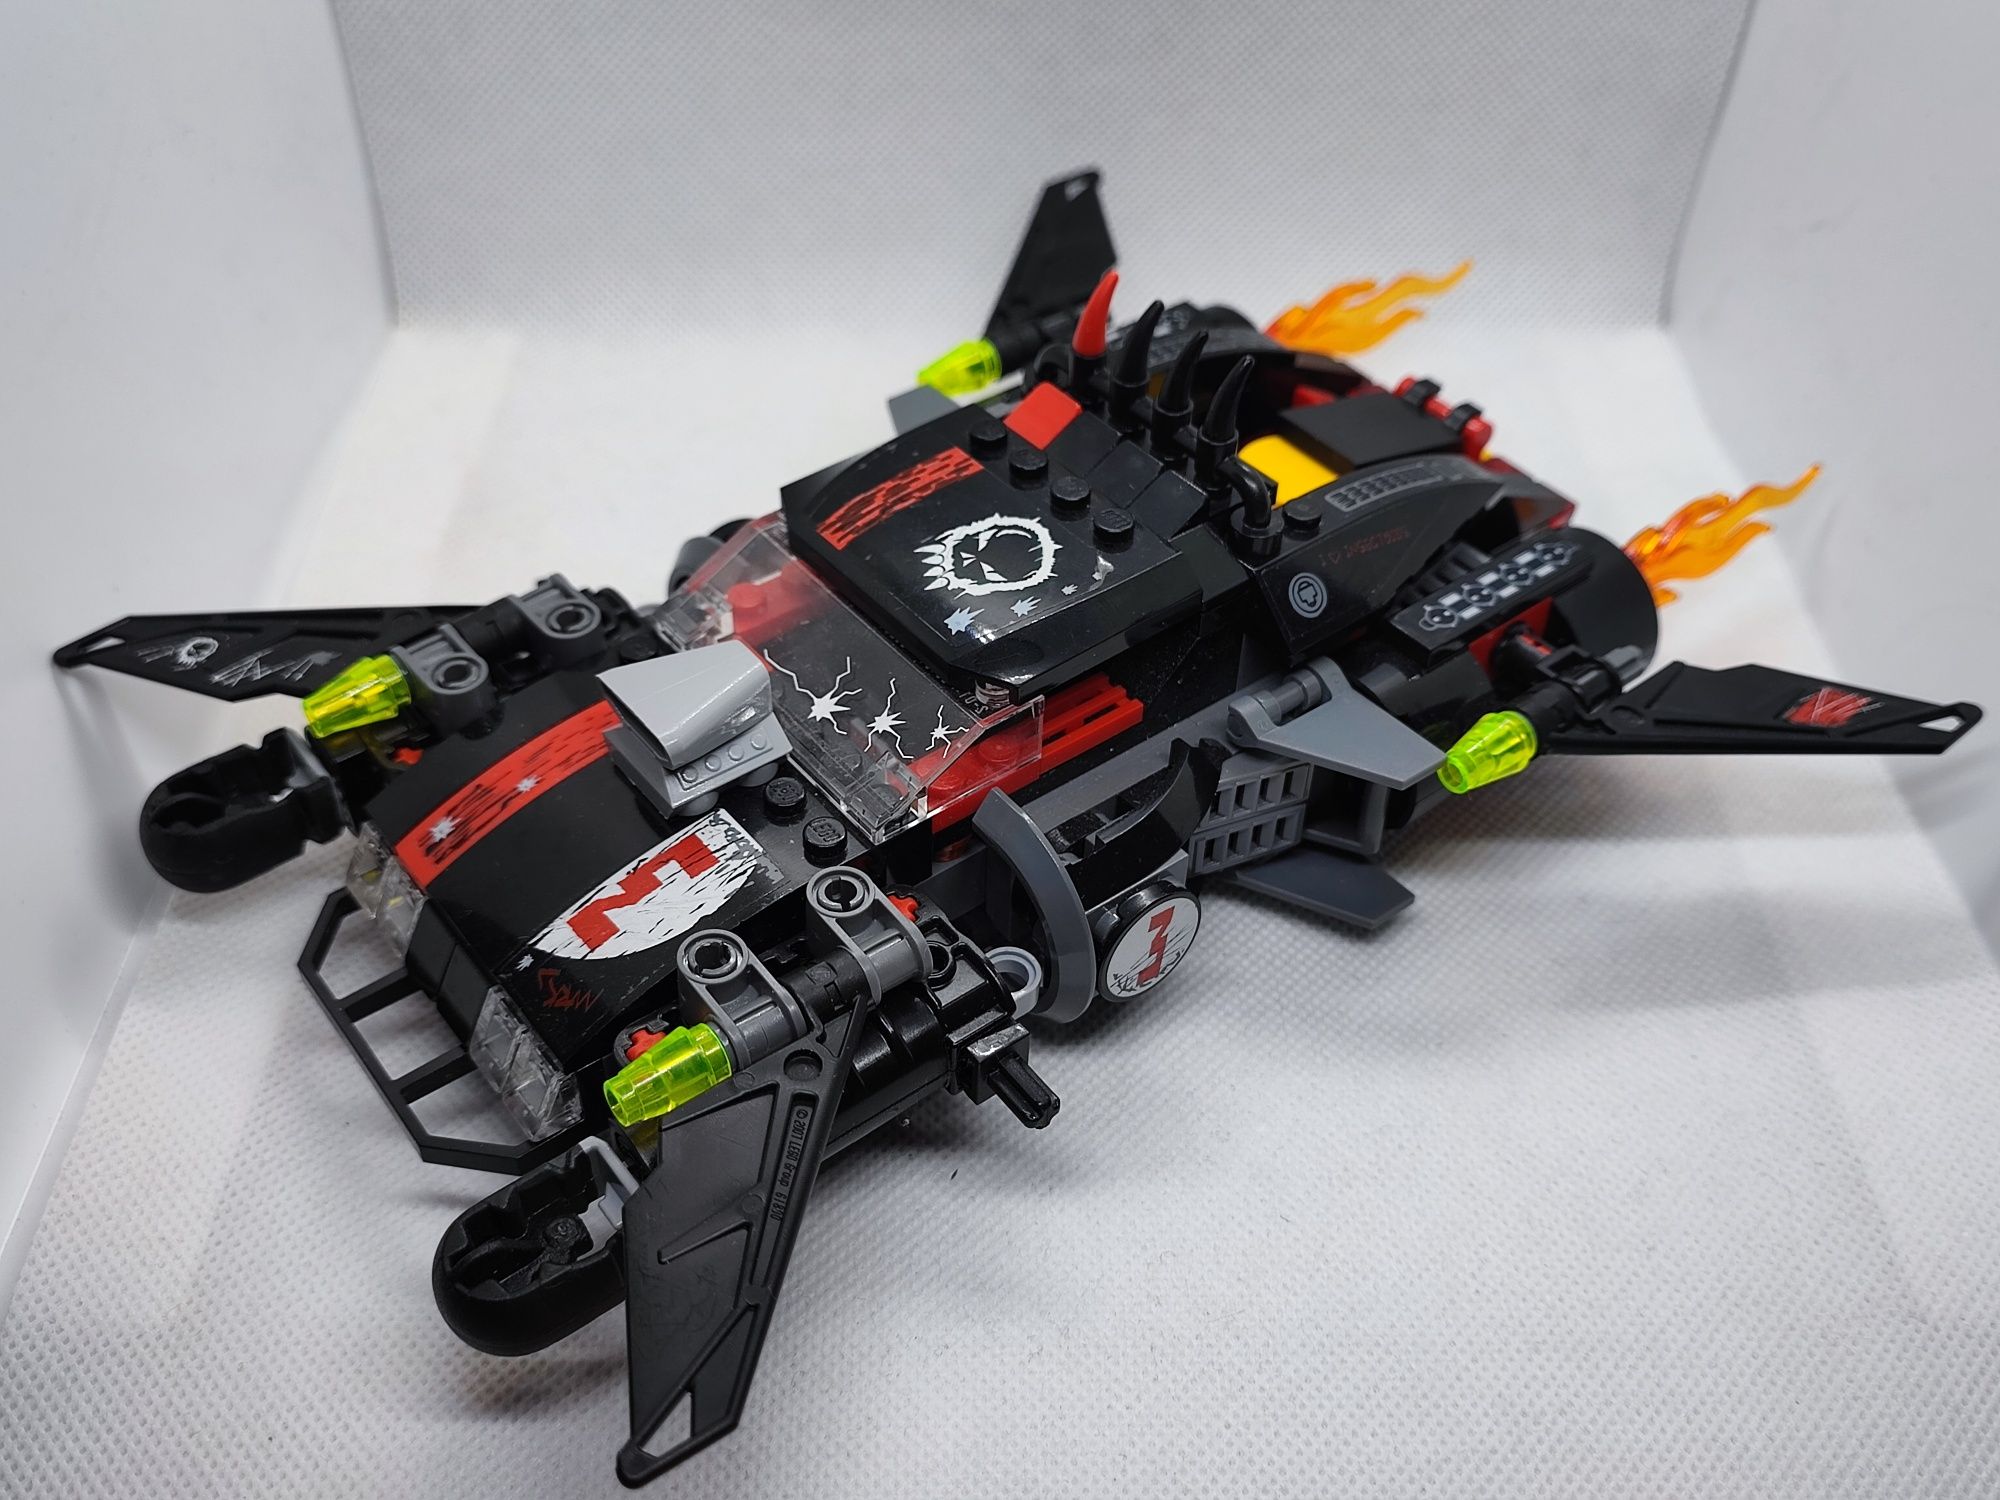 LEGO® 5973 Space Police - Pościg w hiperprzestrzeni